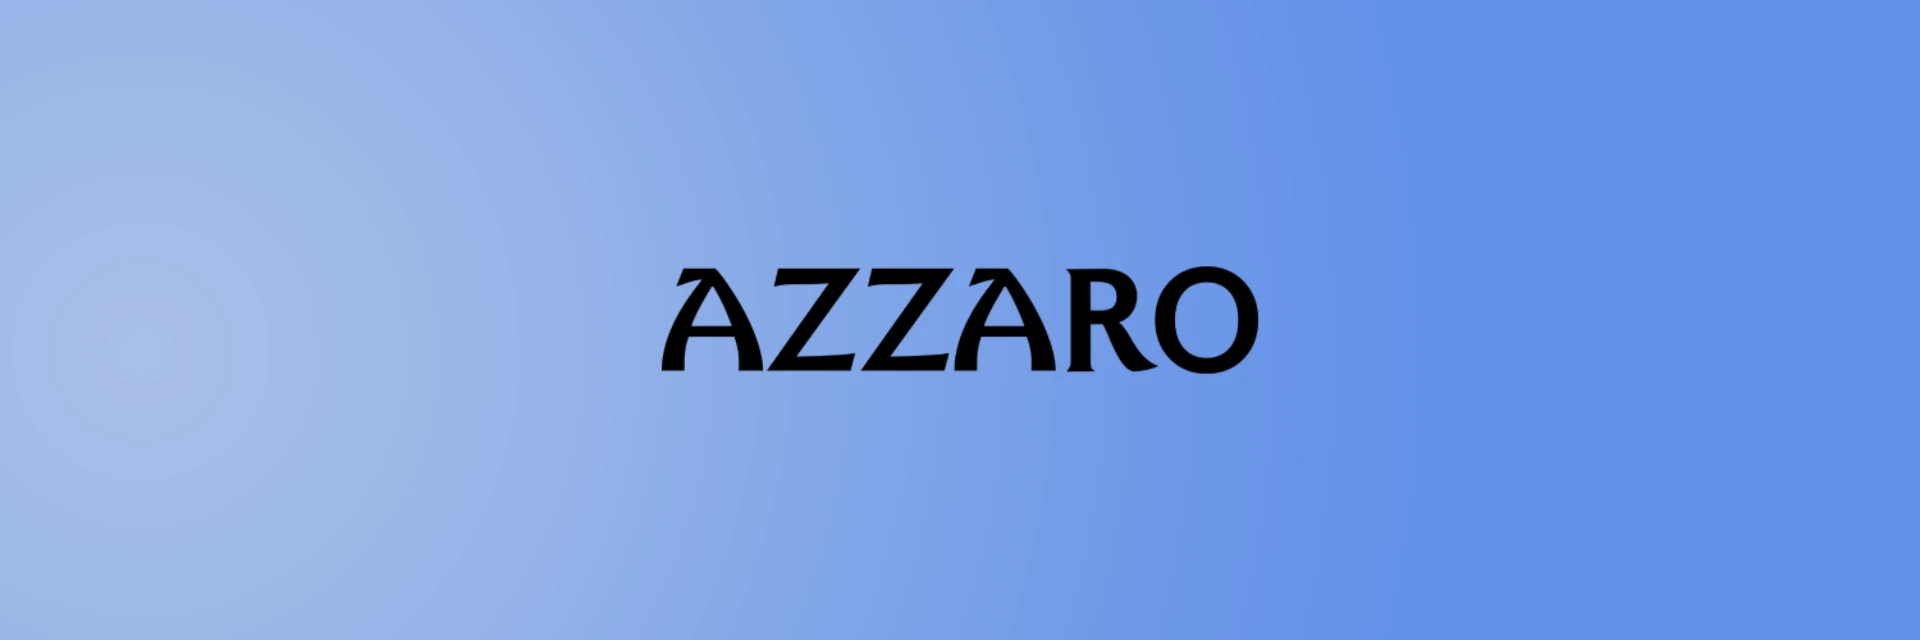 Azzaro perfume bottle with logo on a white background